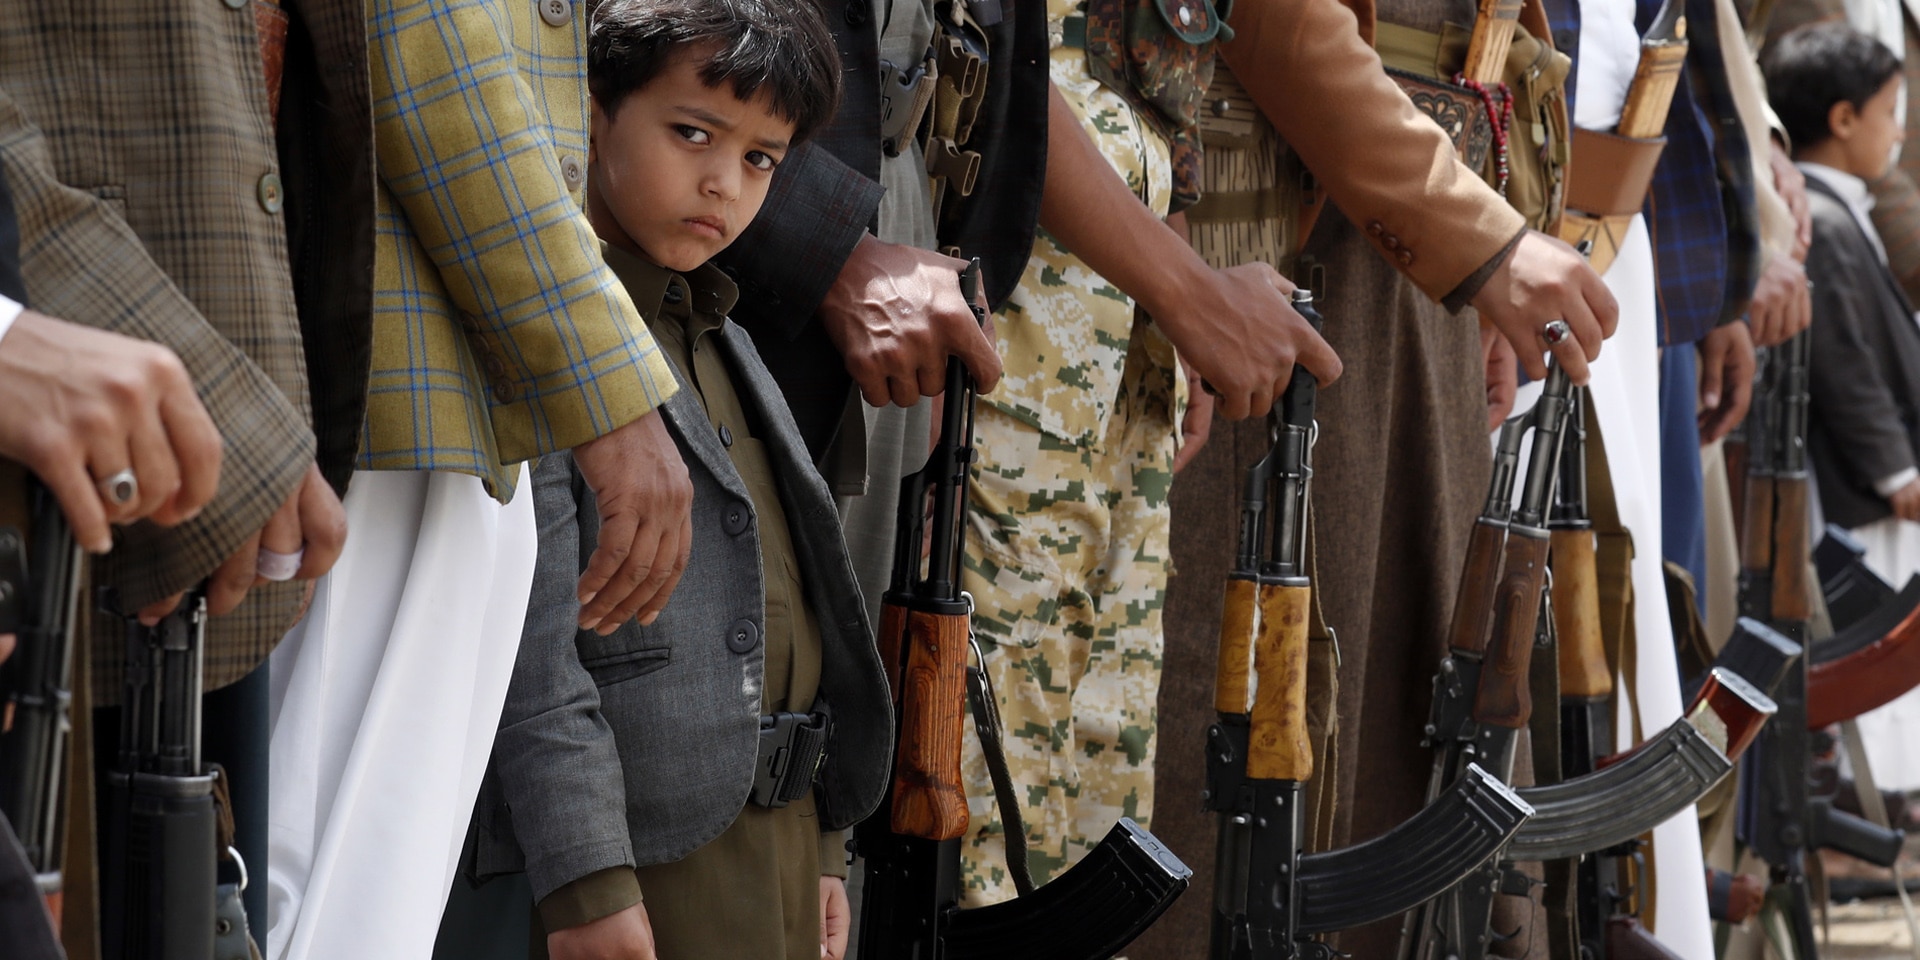 Ein jemenitischer Junge steht zwischen Erwachsenen, die Gewehre vor sich halten.